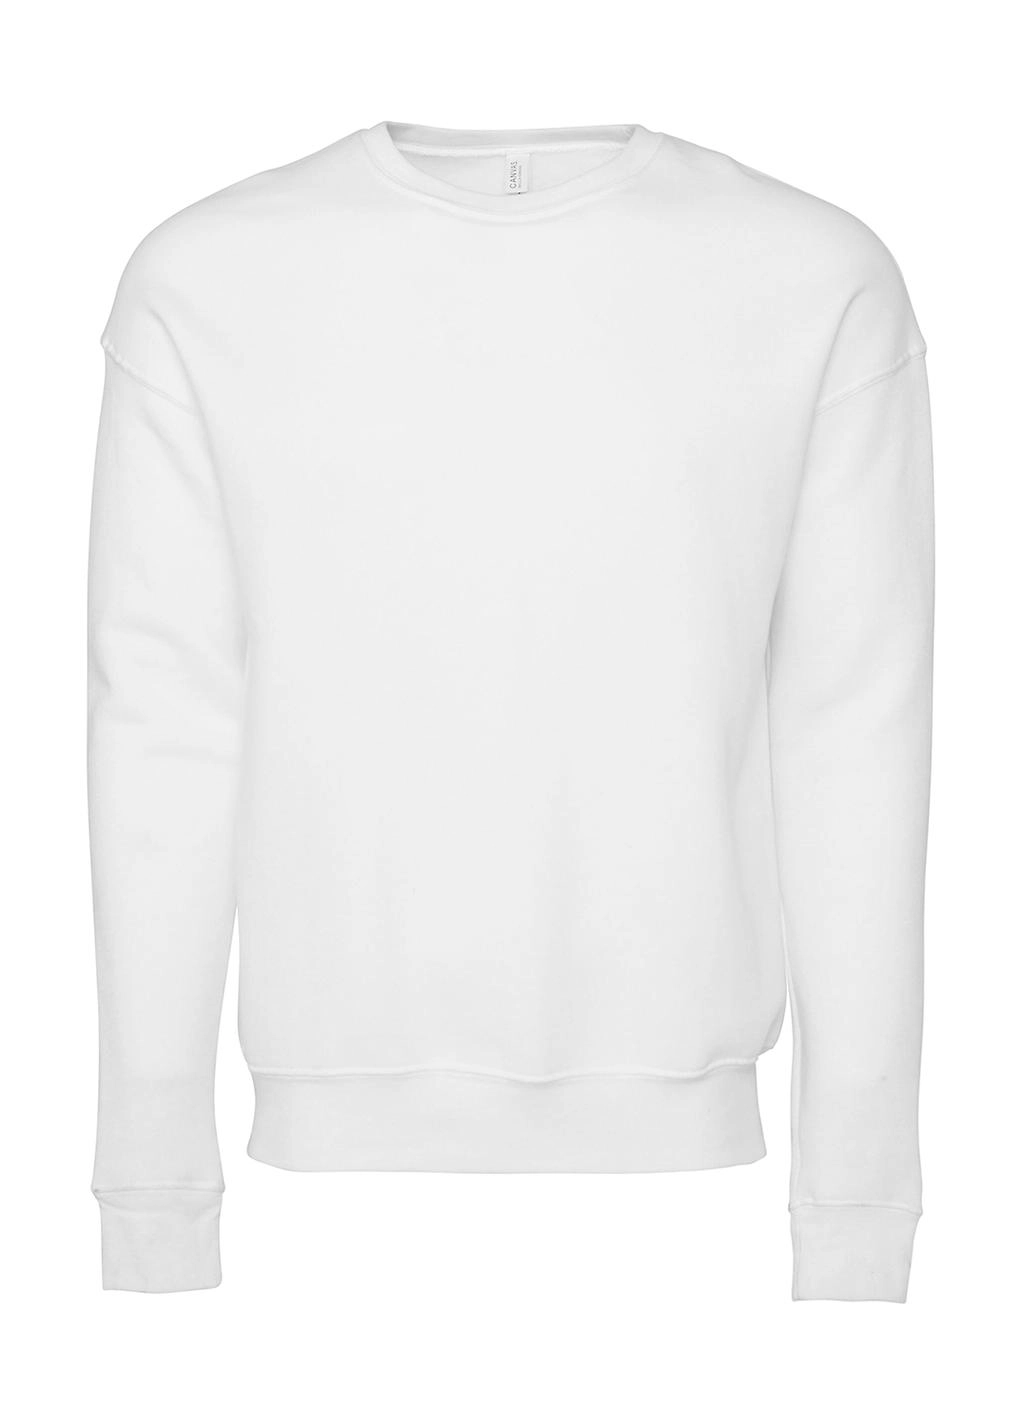 Unisex Drop Shoulder Fleece zum Besticken und Bedrucken in der Farbe DTG White mit Ihren Logo, Schriftzug oder Motiv.